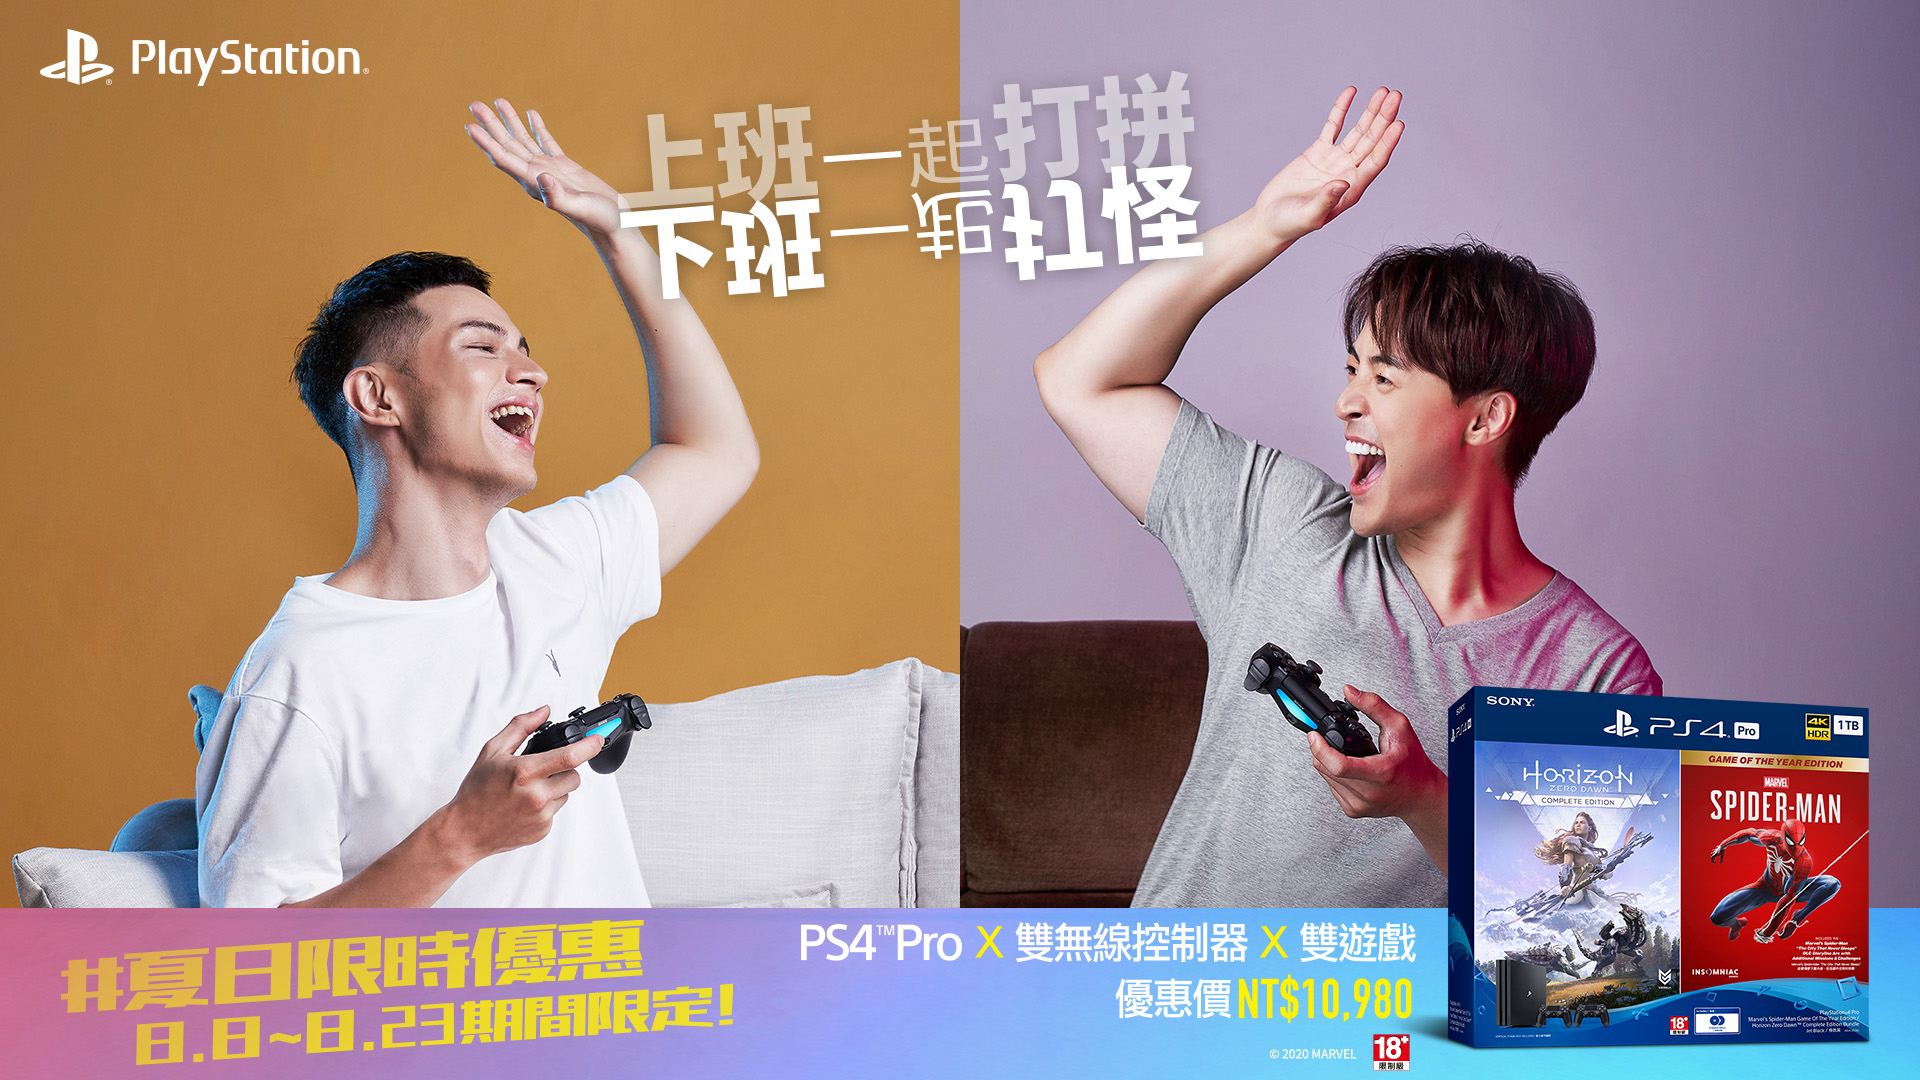 PS4 Pro、PS VR萬元台幣組合開賣，夏日限時優惠全台上架 | 台灣電子競技新聞